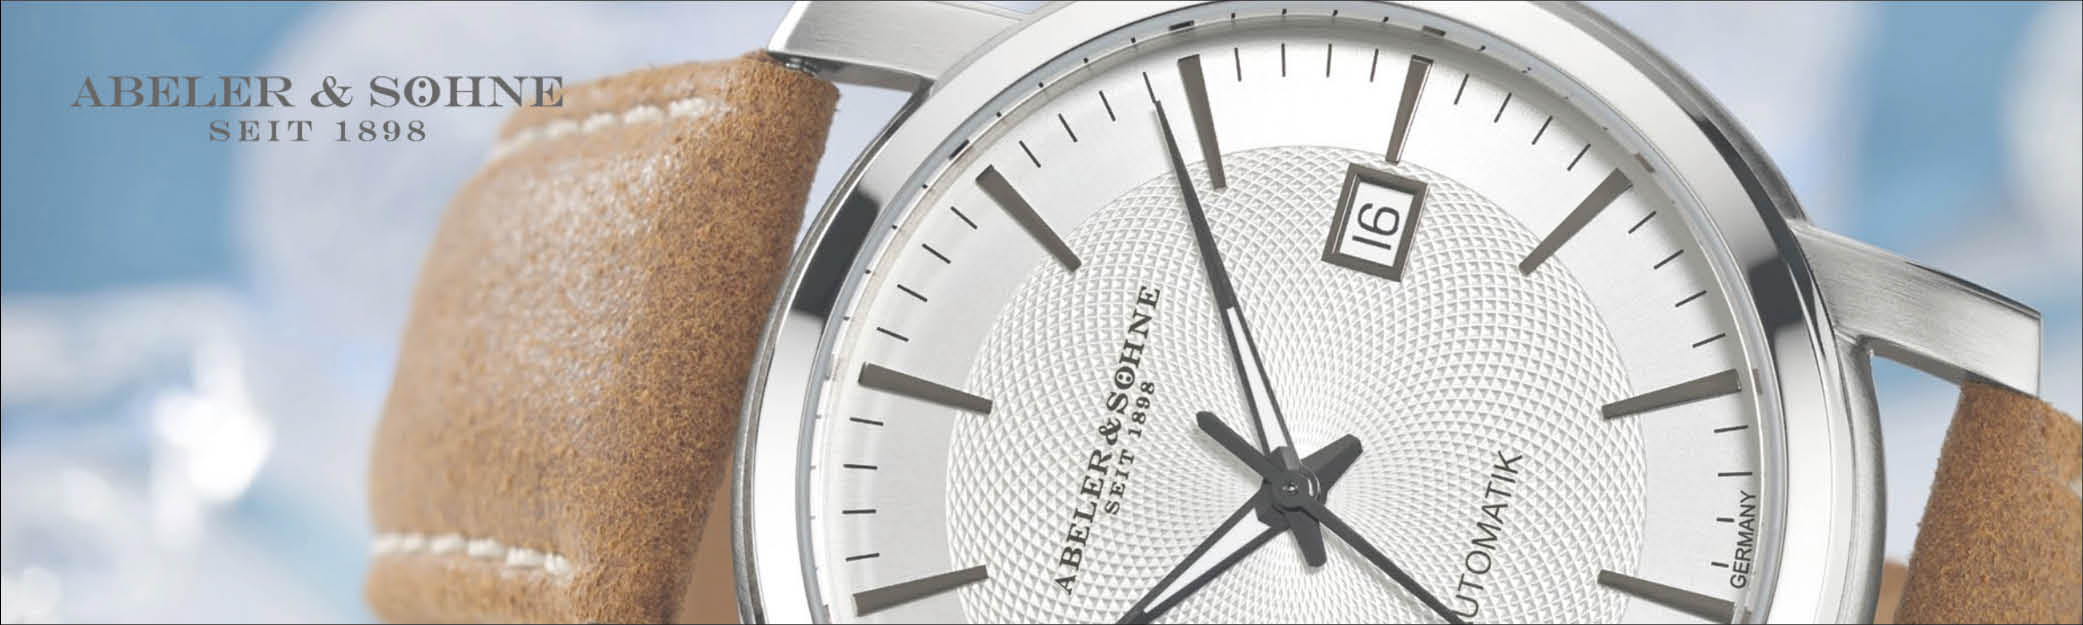 Køb dit nye kvalitets ur fra tyske Abeler & Söhne her hos UrogSmykker